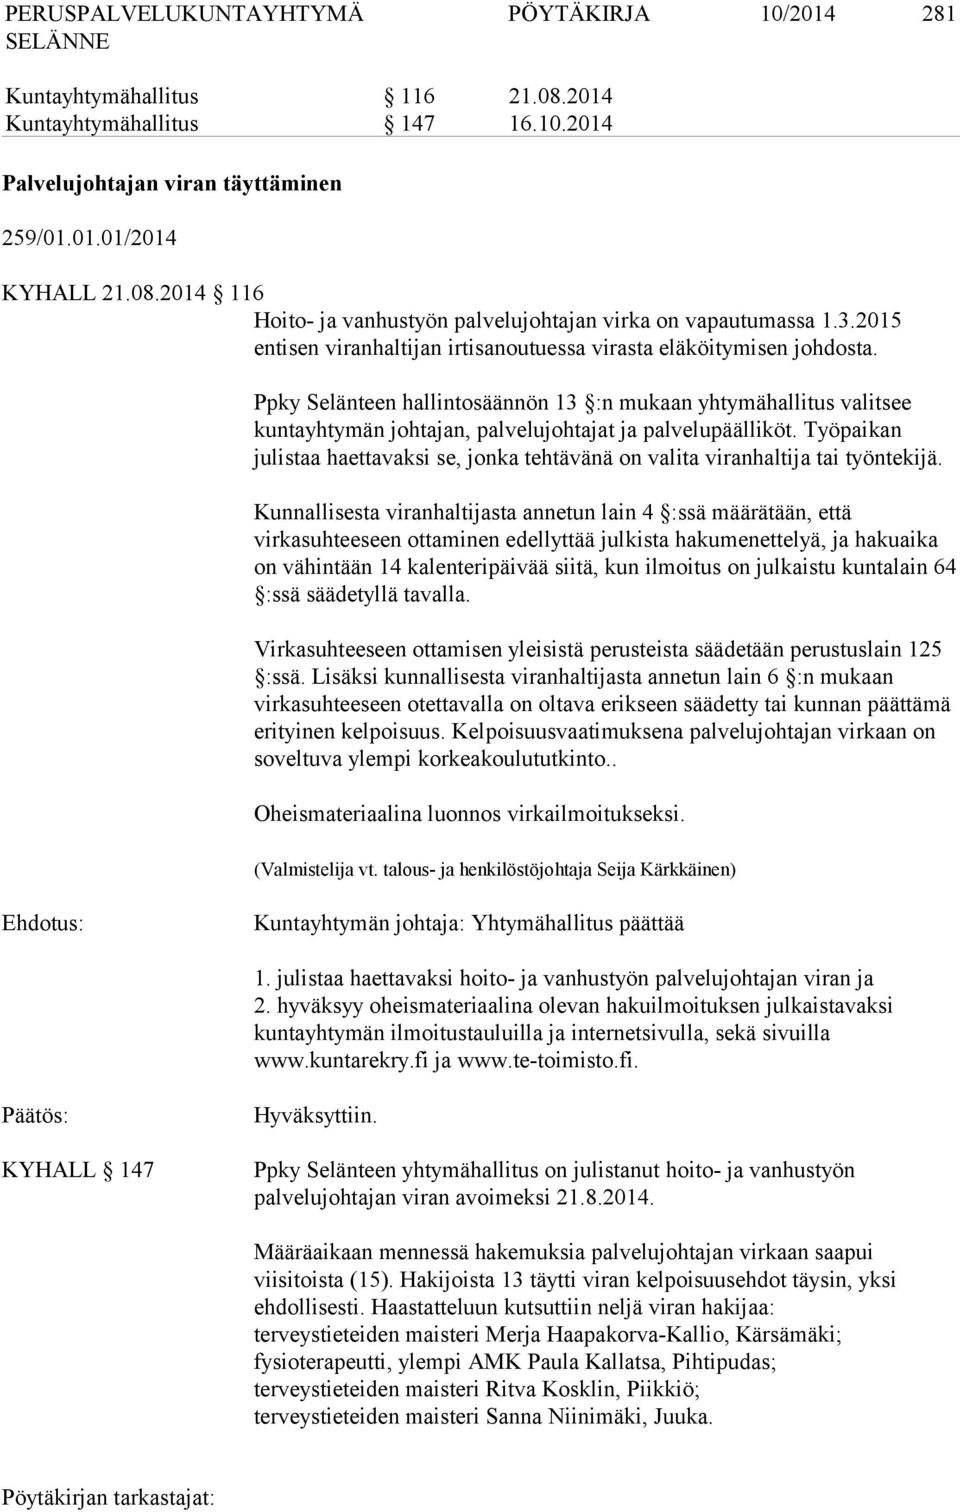 Ppky Selänteen hallintosäännön 13 :n mukaan yhtymähallitus valitsee kuntayhtymän johtajan, palvelujohtajat ja palvelupäälliköt.